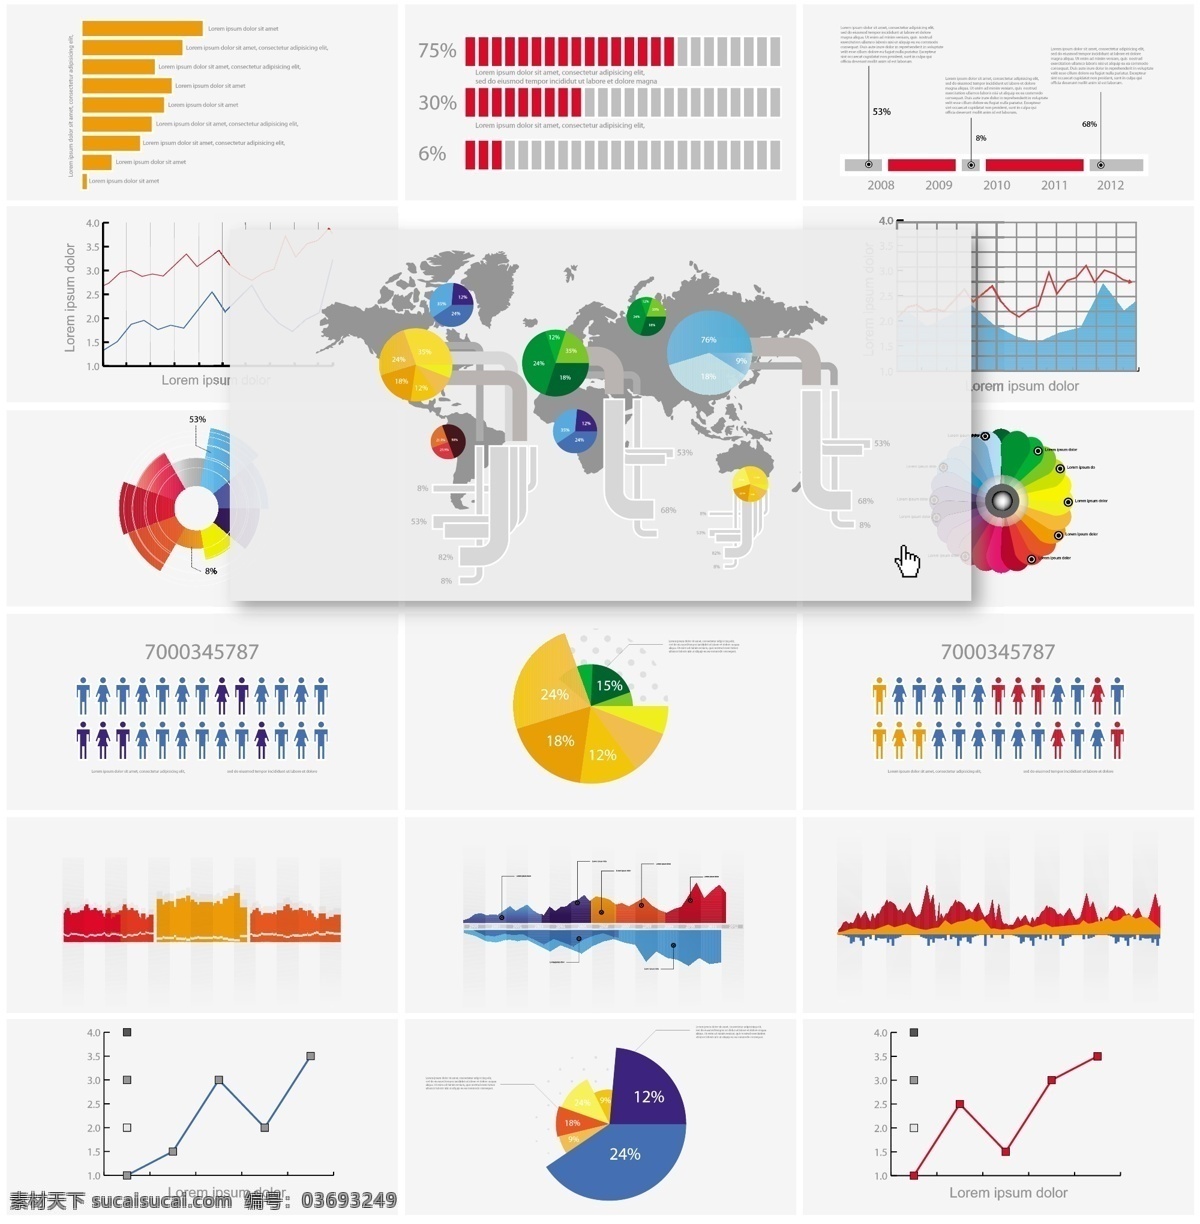 商务 统计 图表 矢量 矢量素材 世界地图 数据图 统计图 网络素材 圆饼图 矢量图